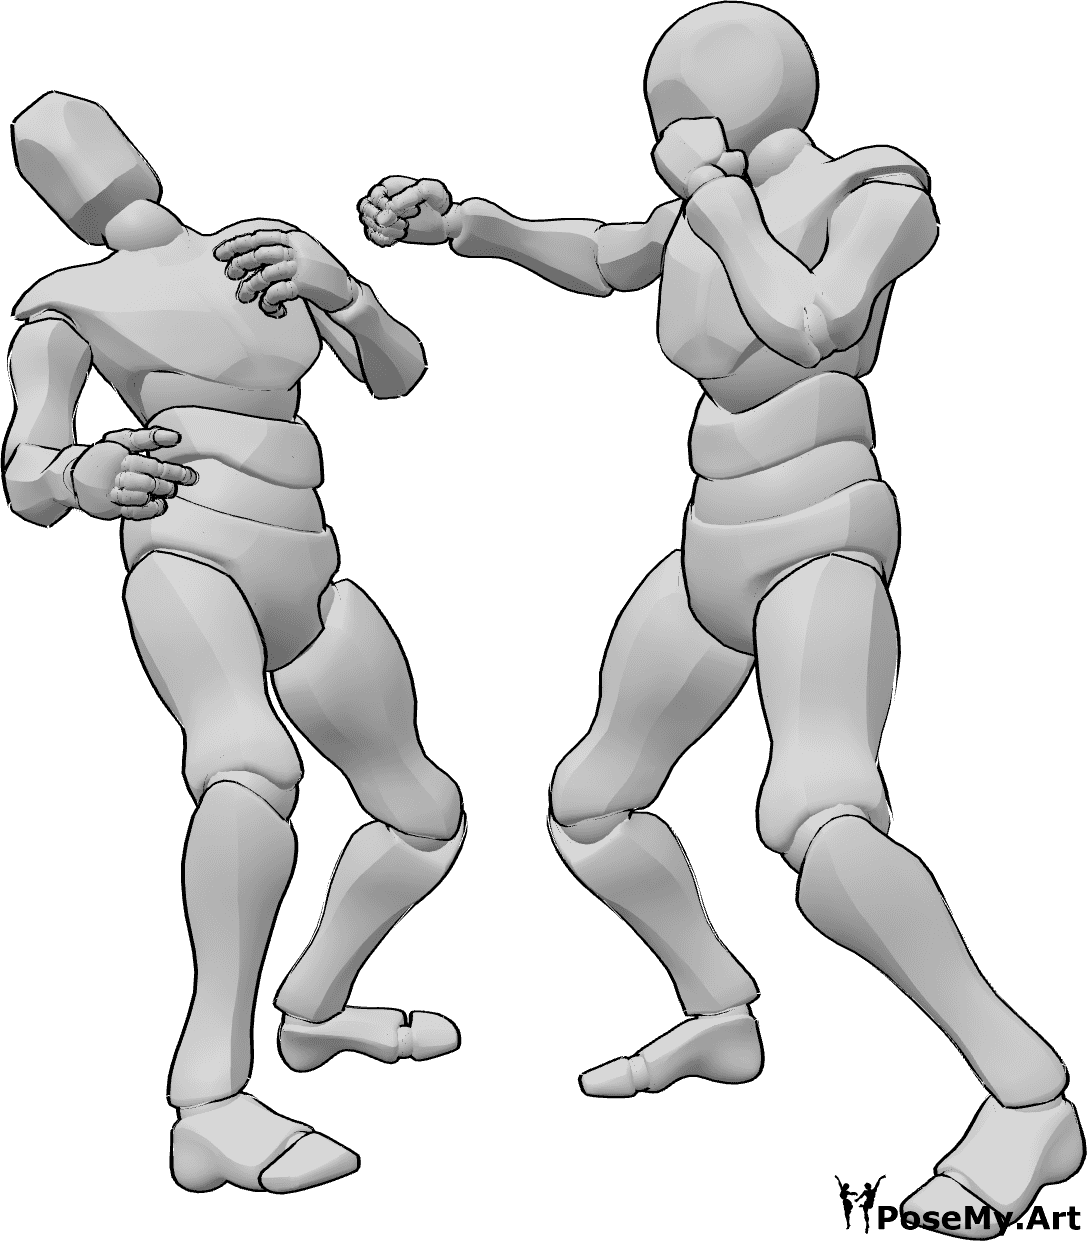 Référence des poses- Pose d'élimination de la boîte - Deux hommes font de la boxe, l'un d'entre eux assomme son adversaire avec un crochet du droit.